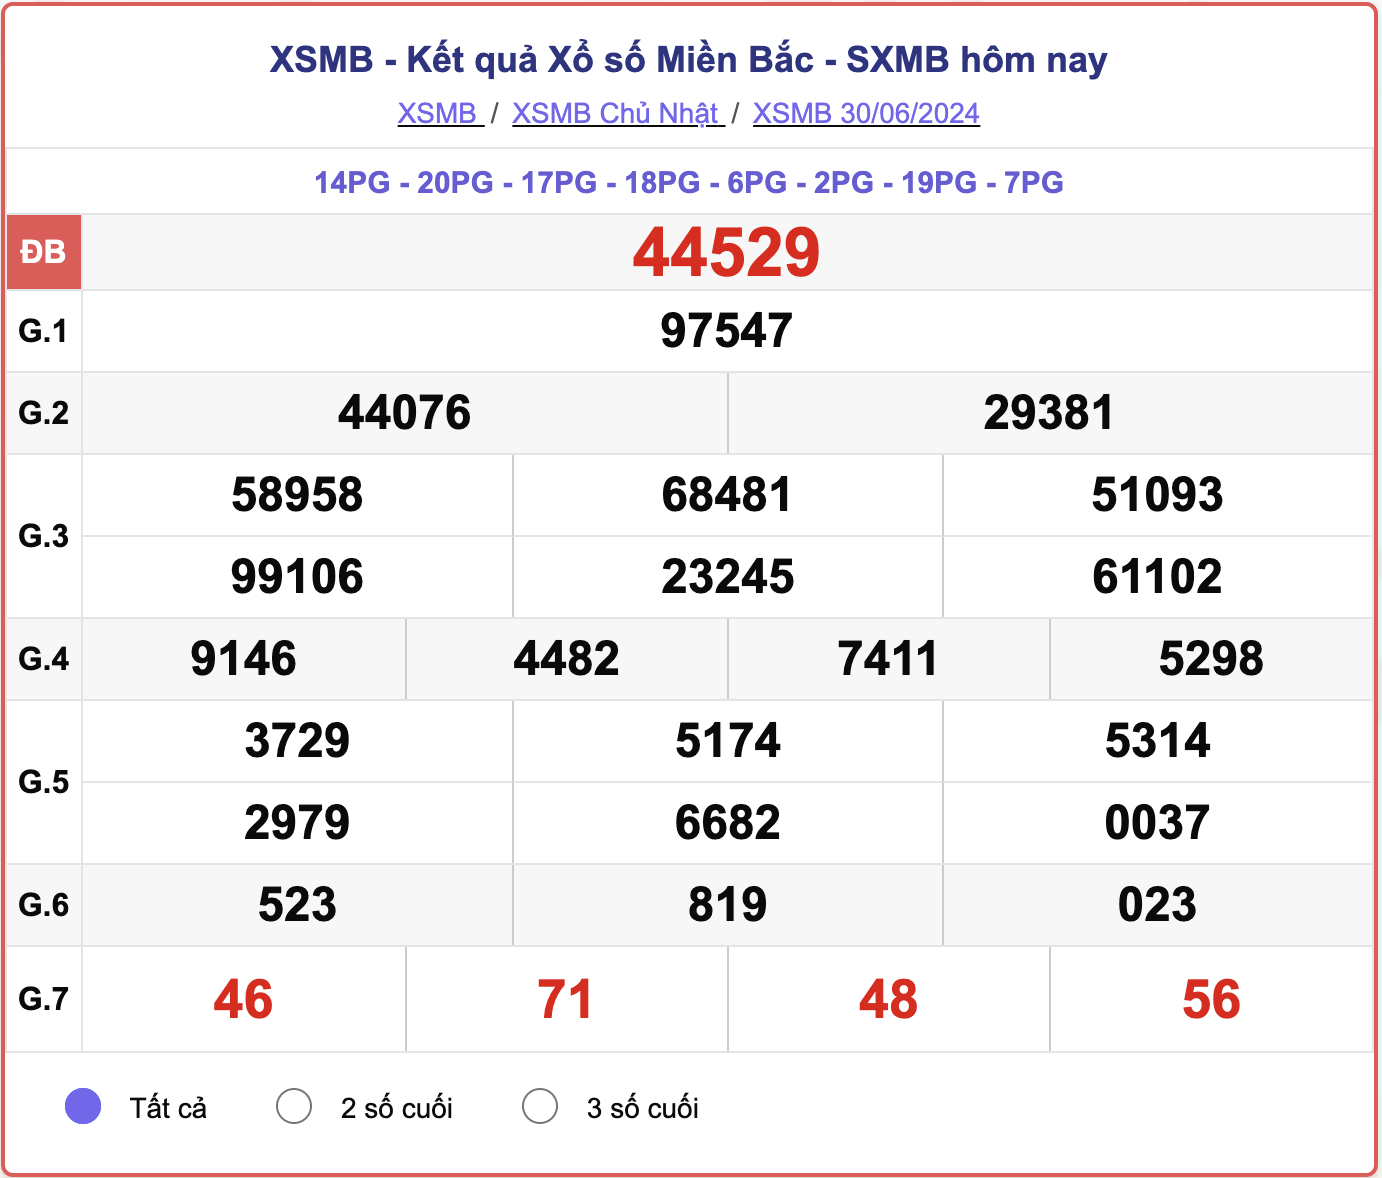 XSMB 30/6, kết quả xổ số miền Bắc hôm nay 30/6/2024.